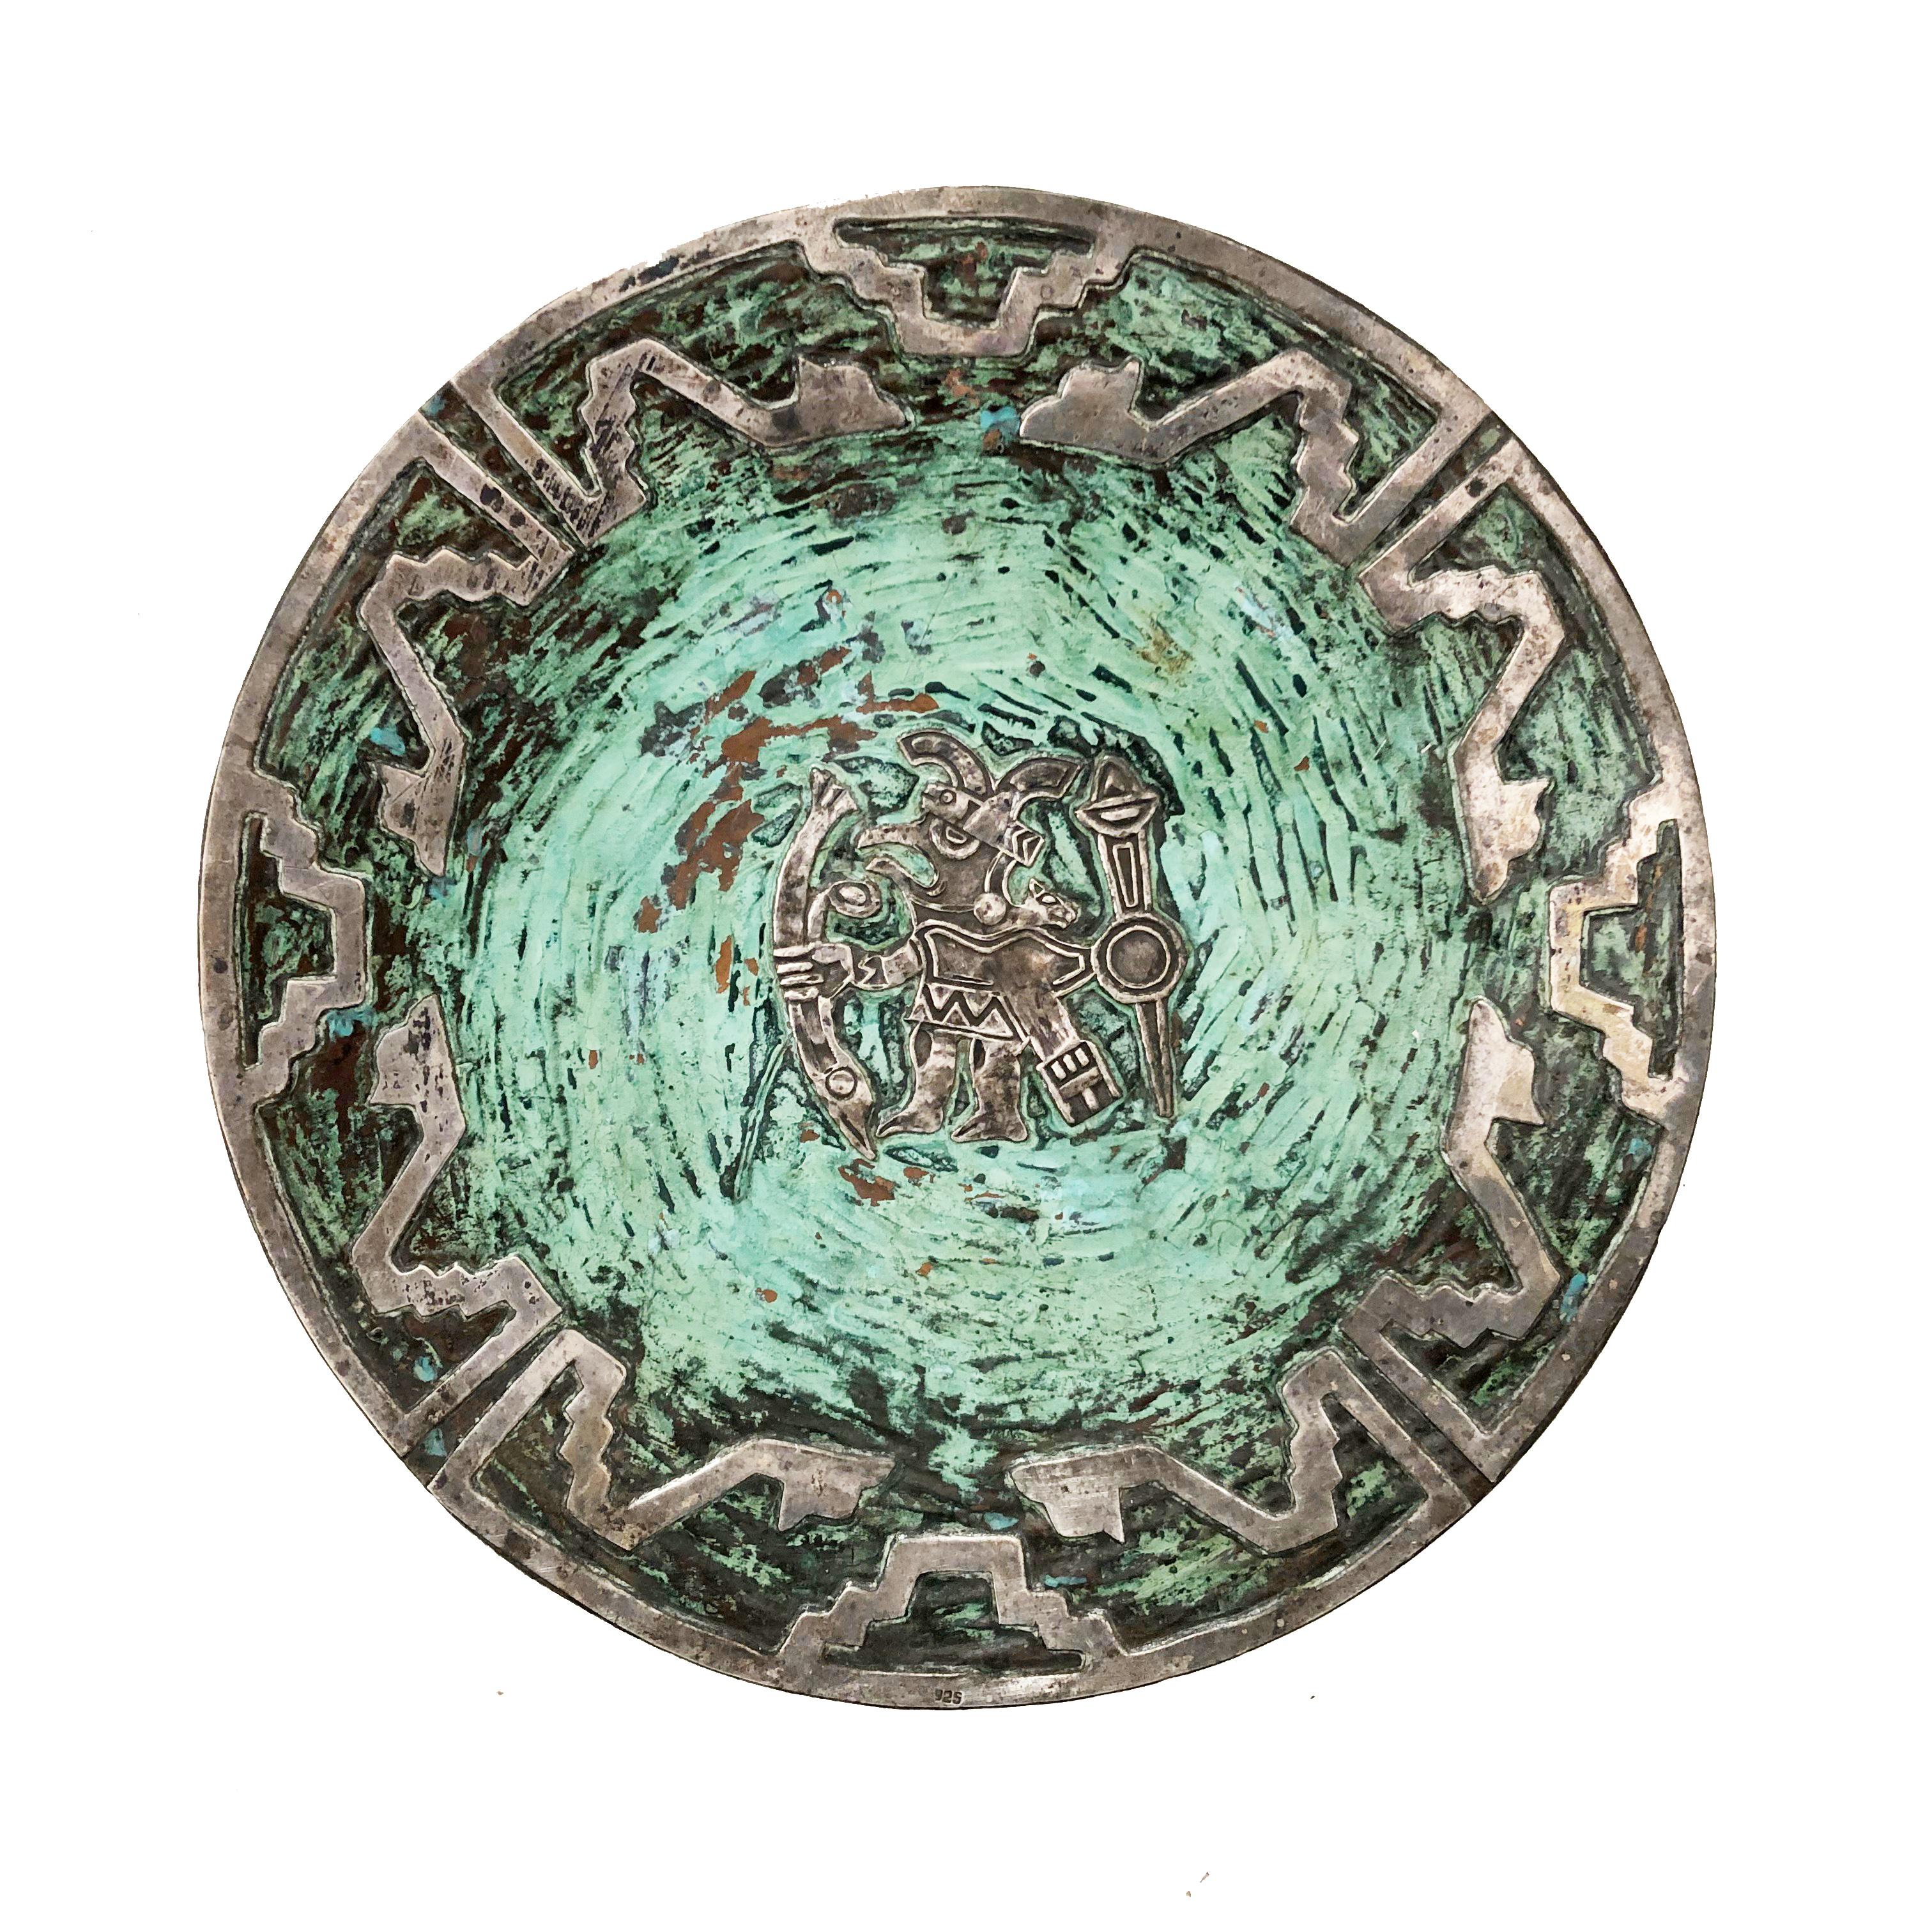 Silber und Türkis auf Kupferplatten, Graziella Laffi zugeschrieben, mit Darstellungen eines Kriegergottes und eines Lamas. Nicht signiert. Wunderbare Patina.